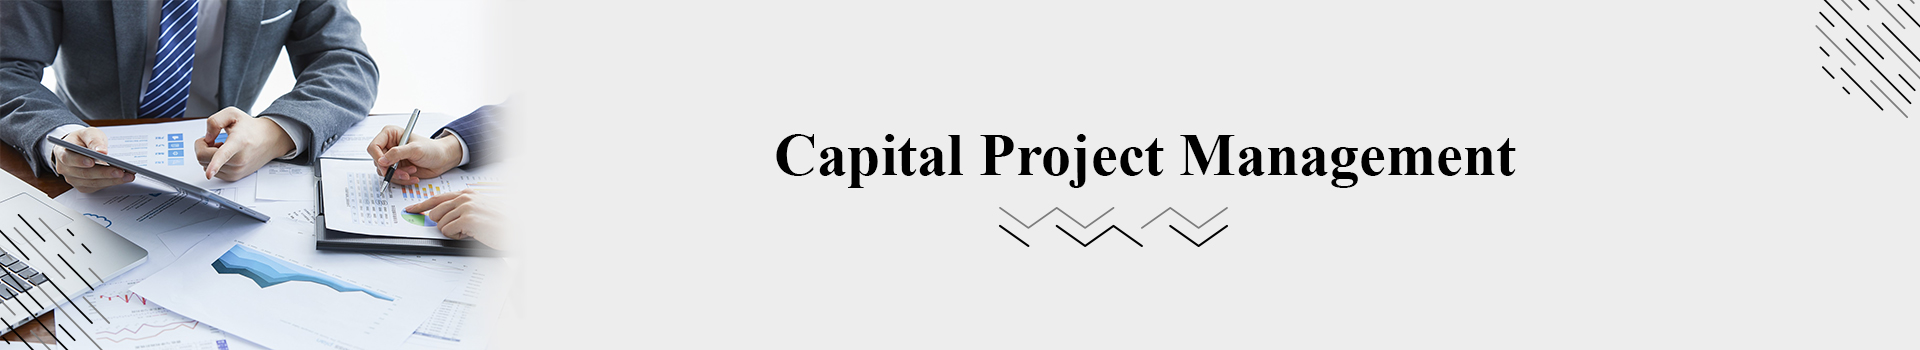 Capital Project Management